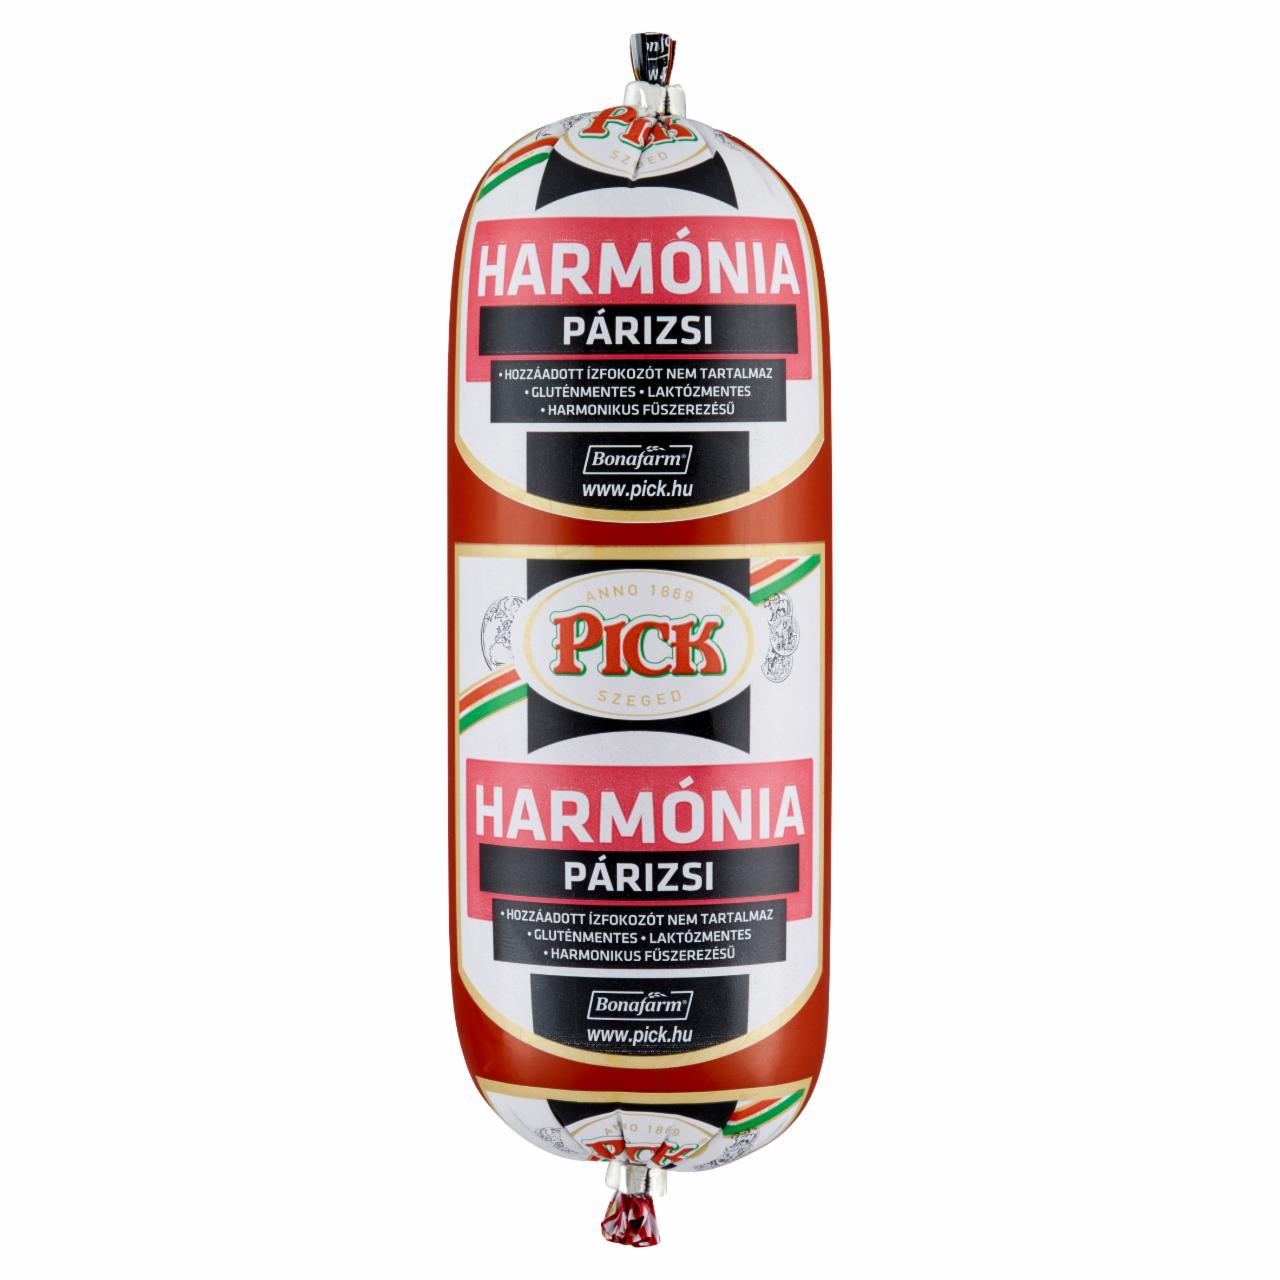 Képek - Pick Harmónia párizsi 400 g